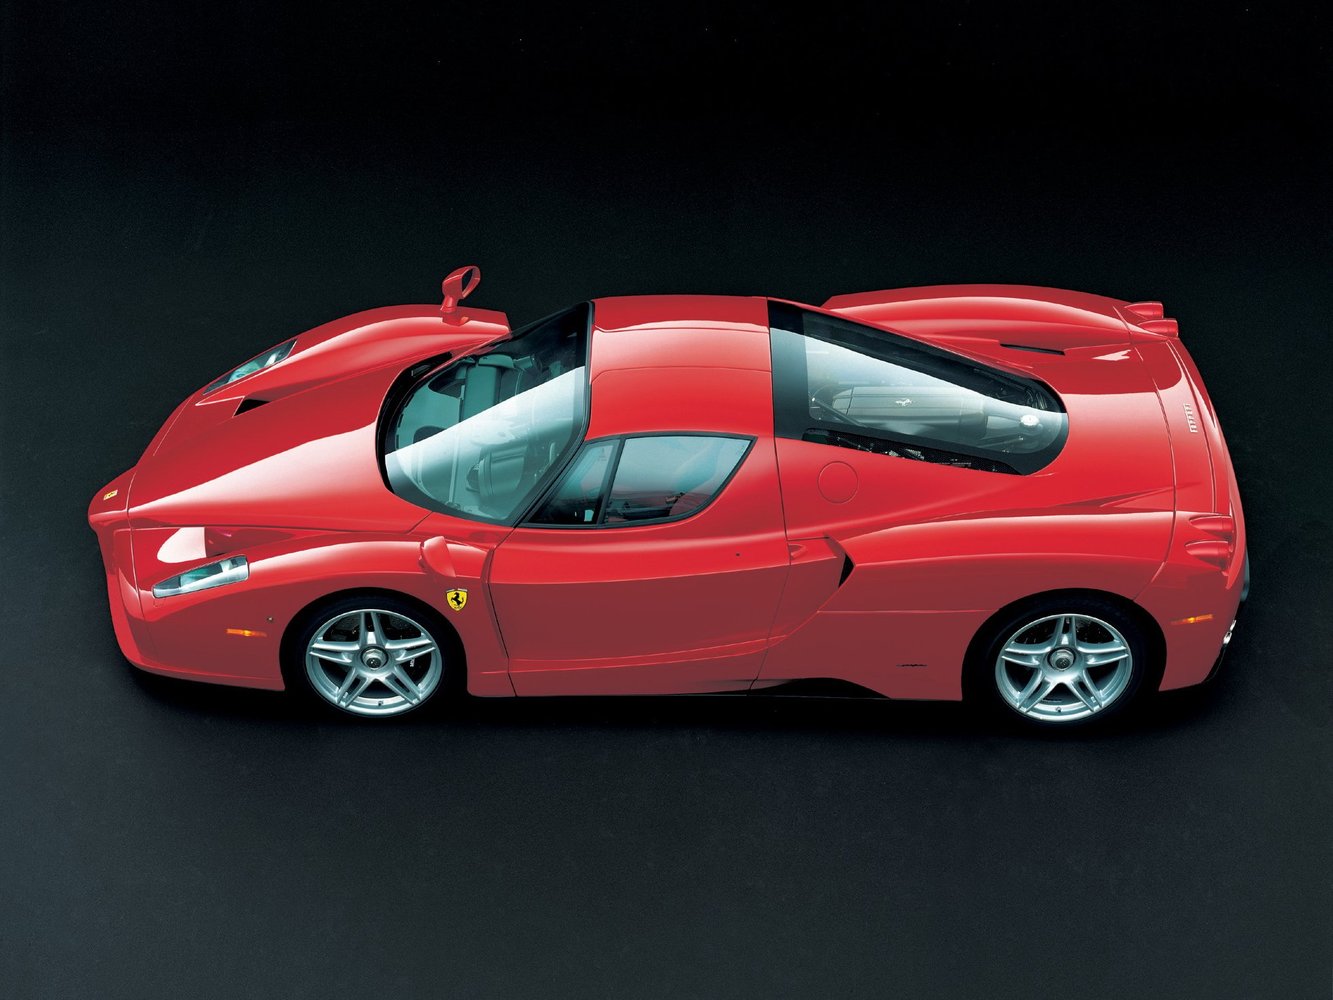 купе Ferrari Enzo 2002 - 2004г выпуска модификация 6.0 MT (660 л.с.)